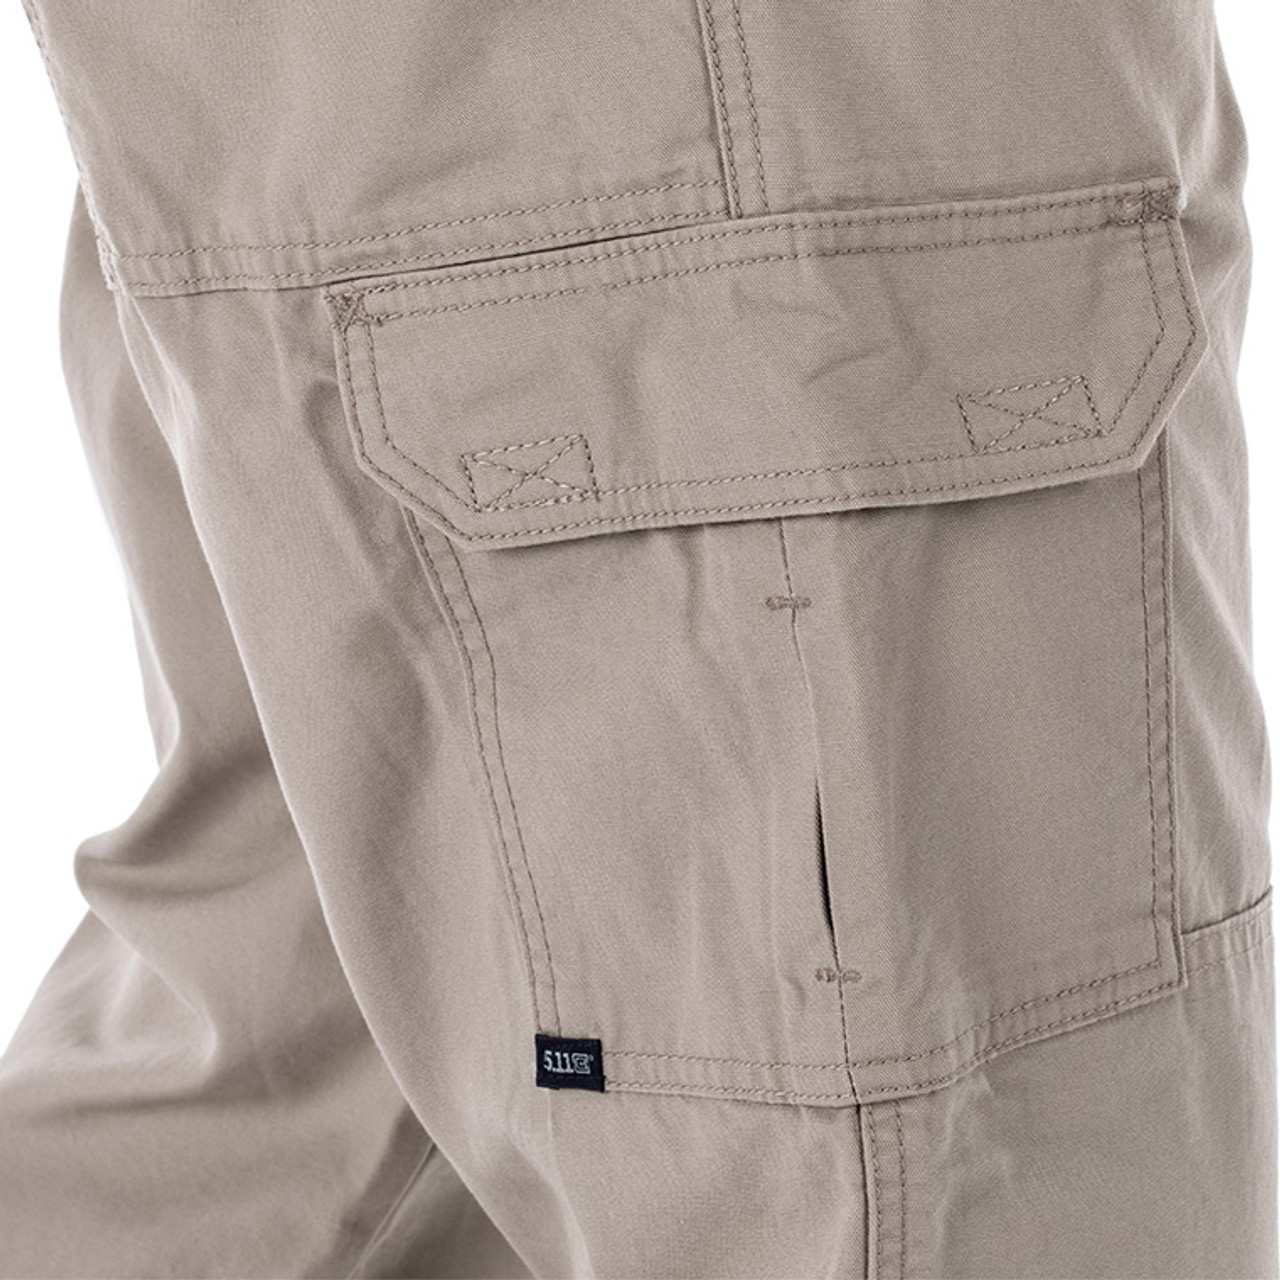 5.11 Tactical® Cotton Canvas Pant